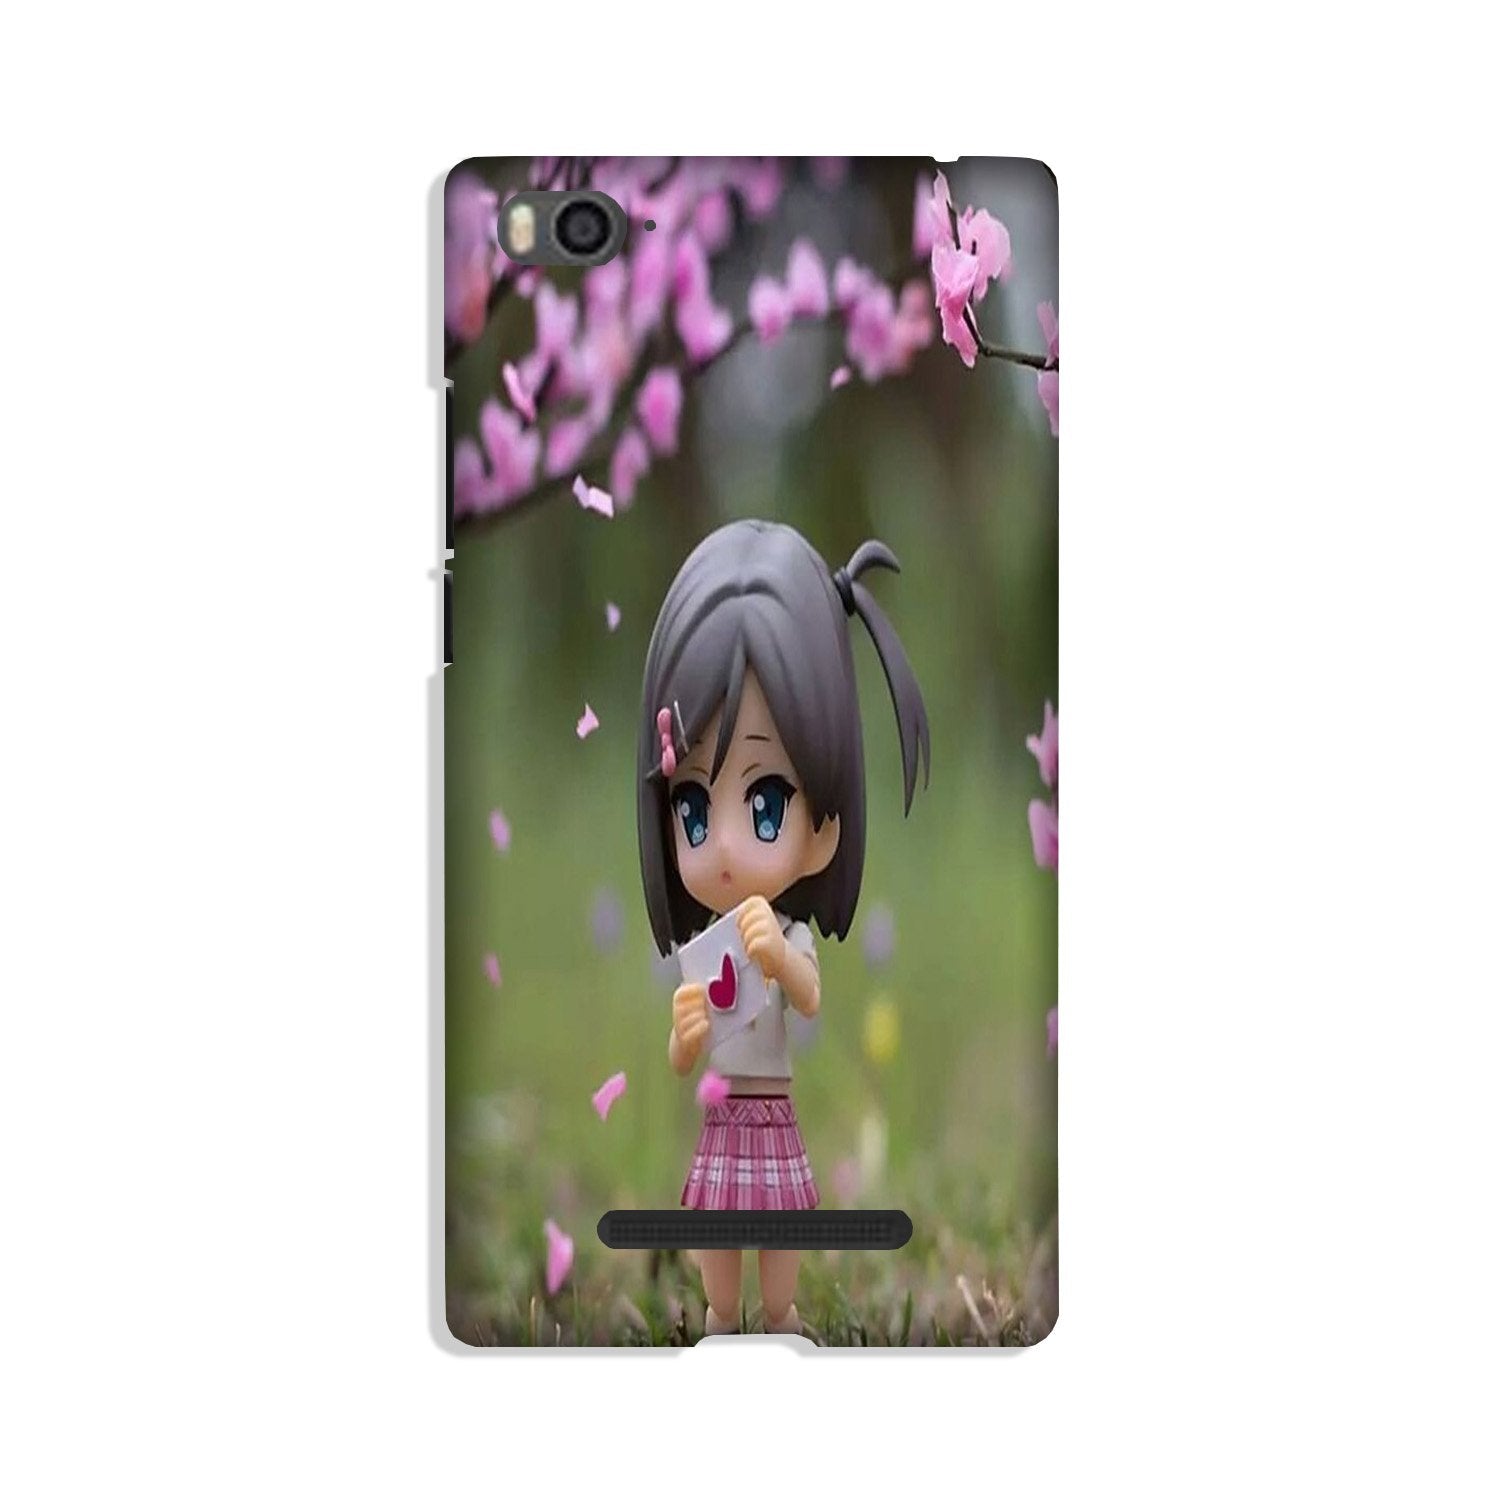 Cute Girl Case for Xiaomi Mi 4i